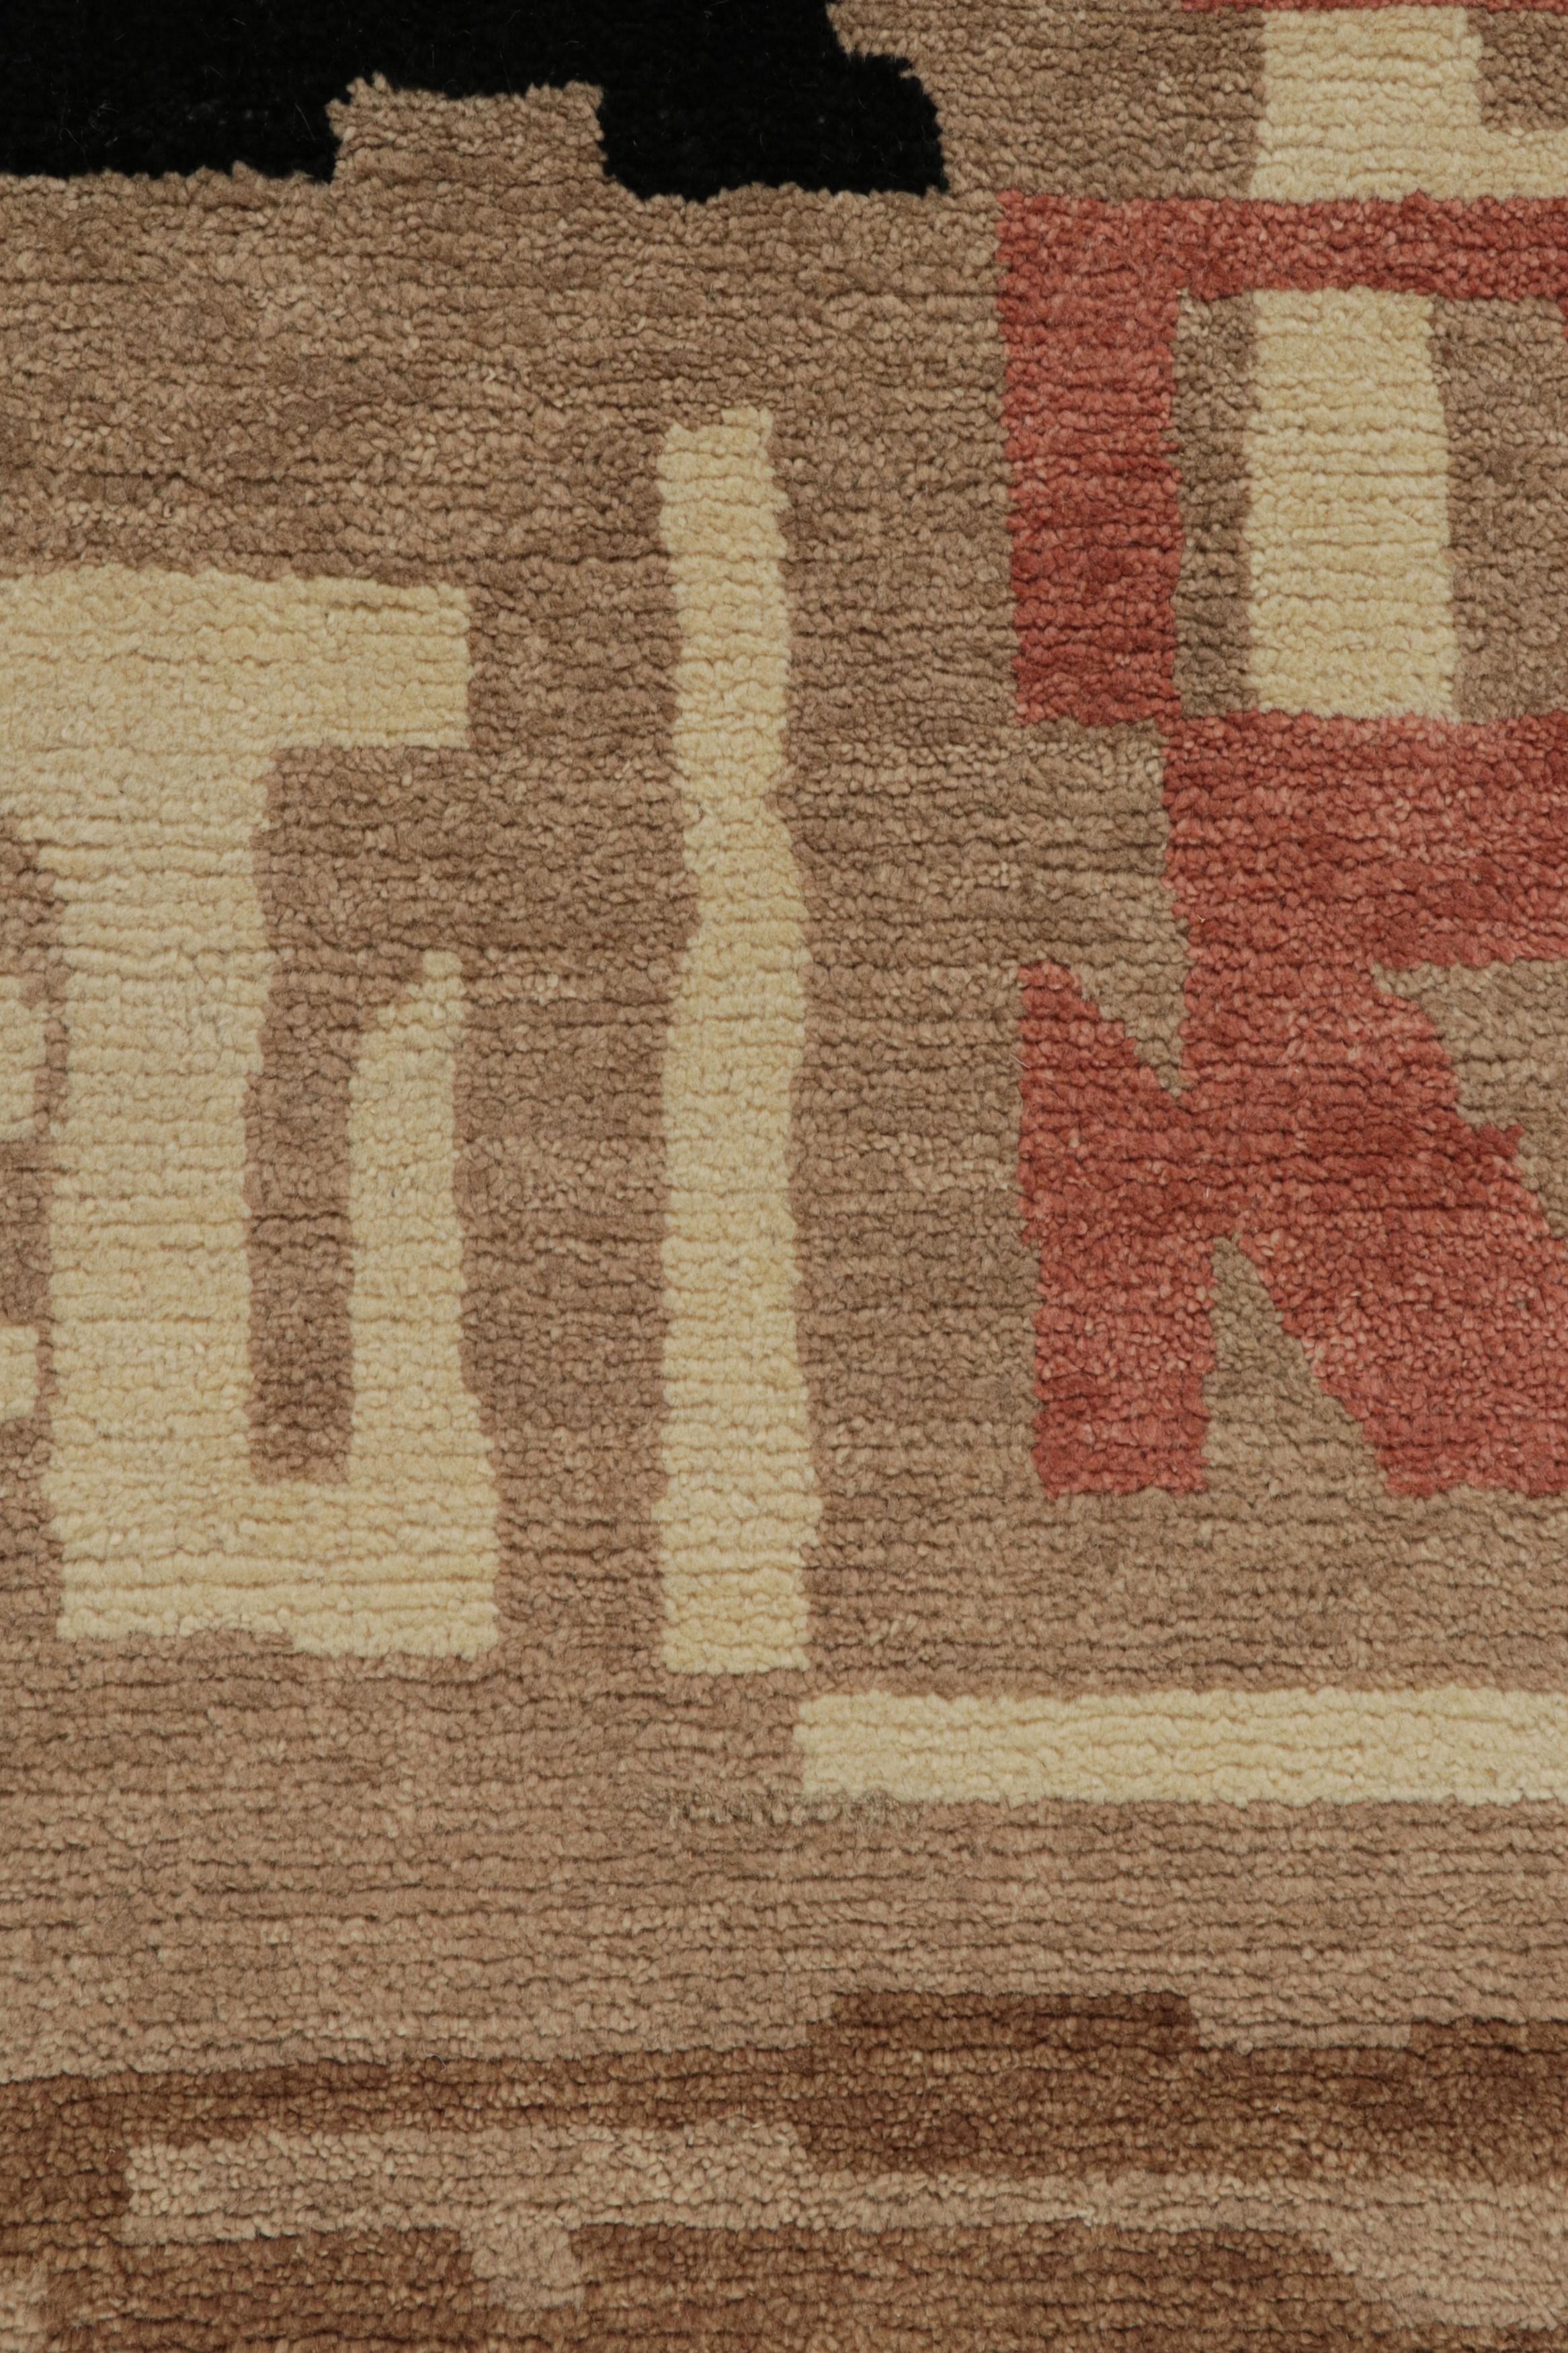 XXIe siècle et contemporain Rug & Kilim's French Style Art Deco rug in Brown, Red, White & Black Patterns (tapis de style français Art déco à motifs bruns, rouges, blancs et noirs) en vente